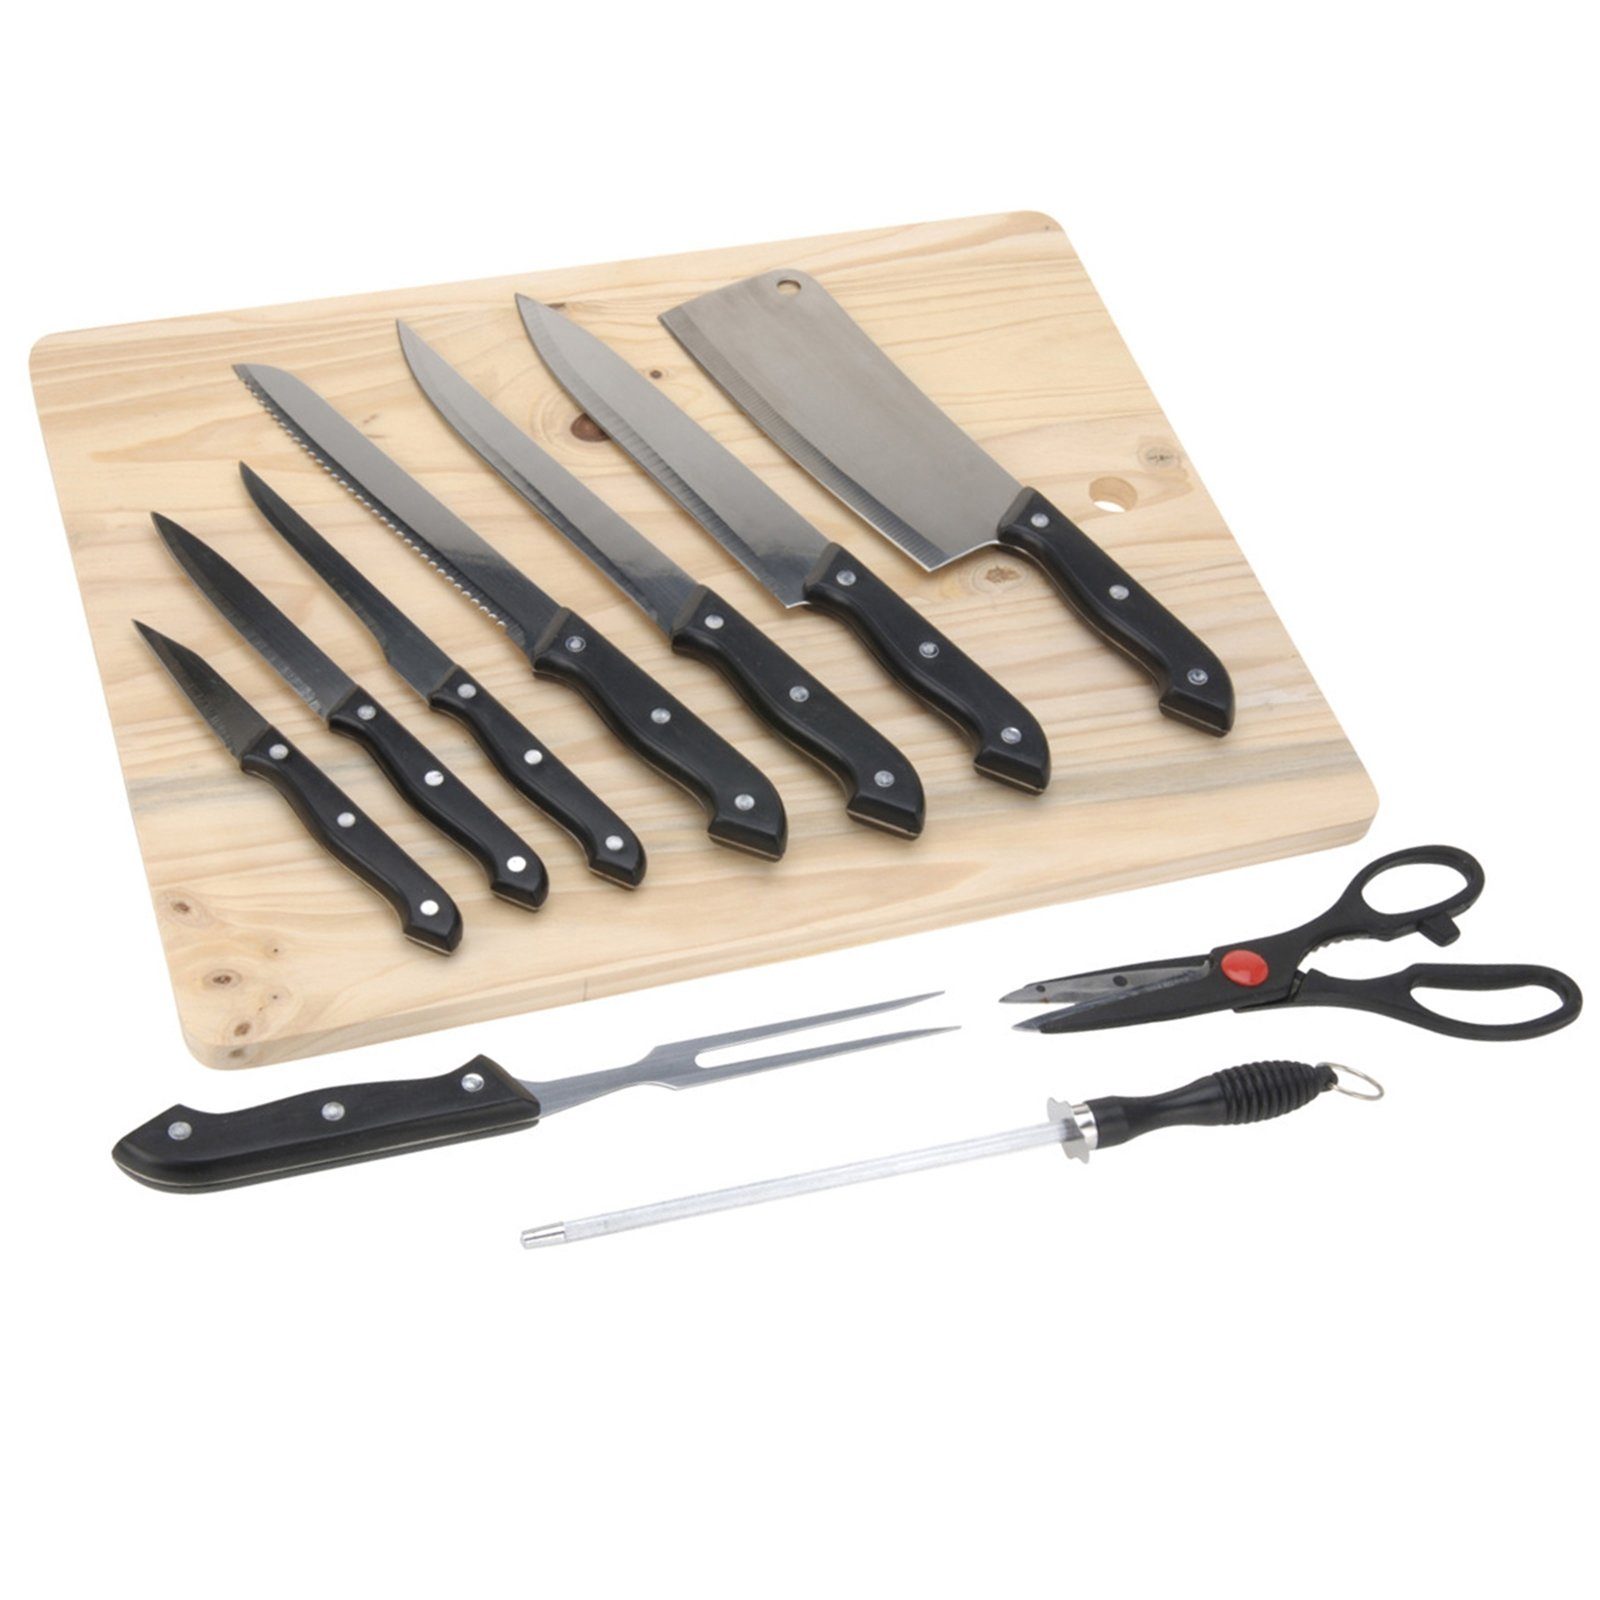 Neuetischkultur Messer-Set Messerset 11-tlg. mit Schneidebrett (11-tlg)